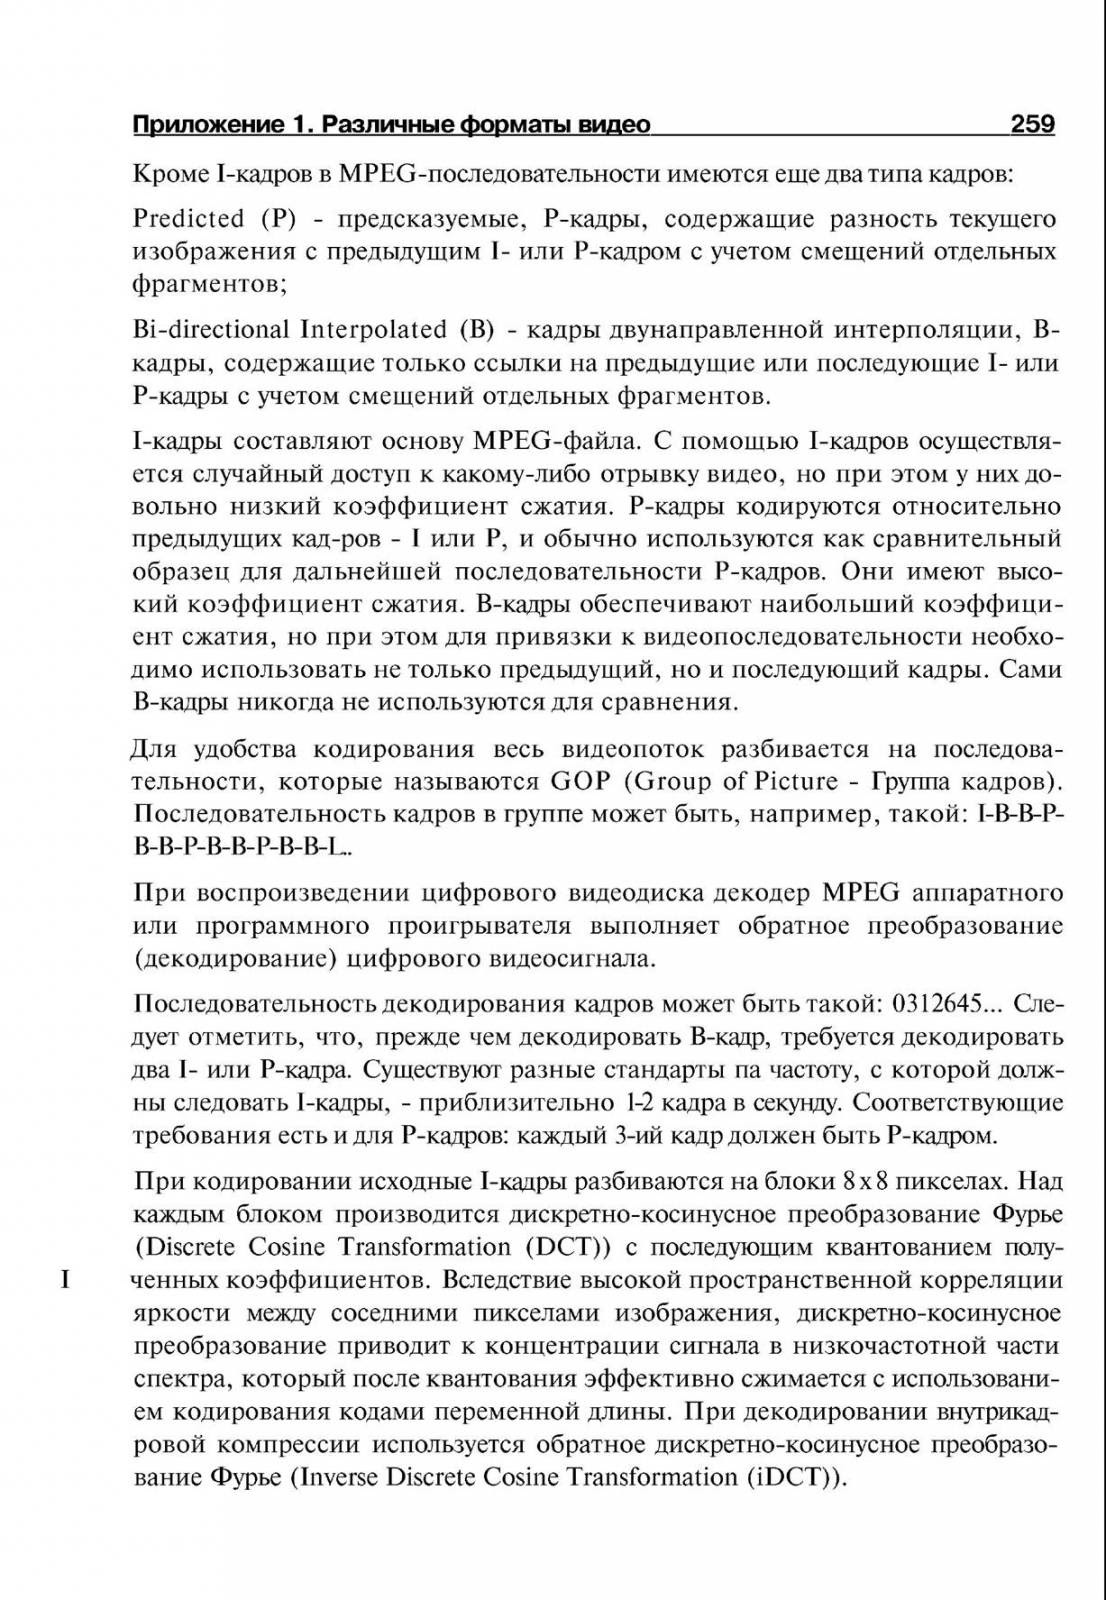 http://redaktori-uroki.3dn.ru/_ph/14/574263513.jpg